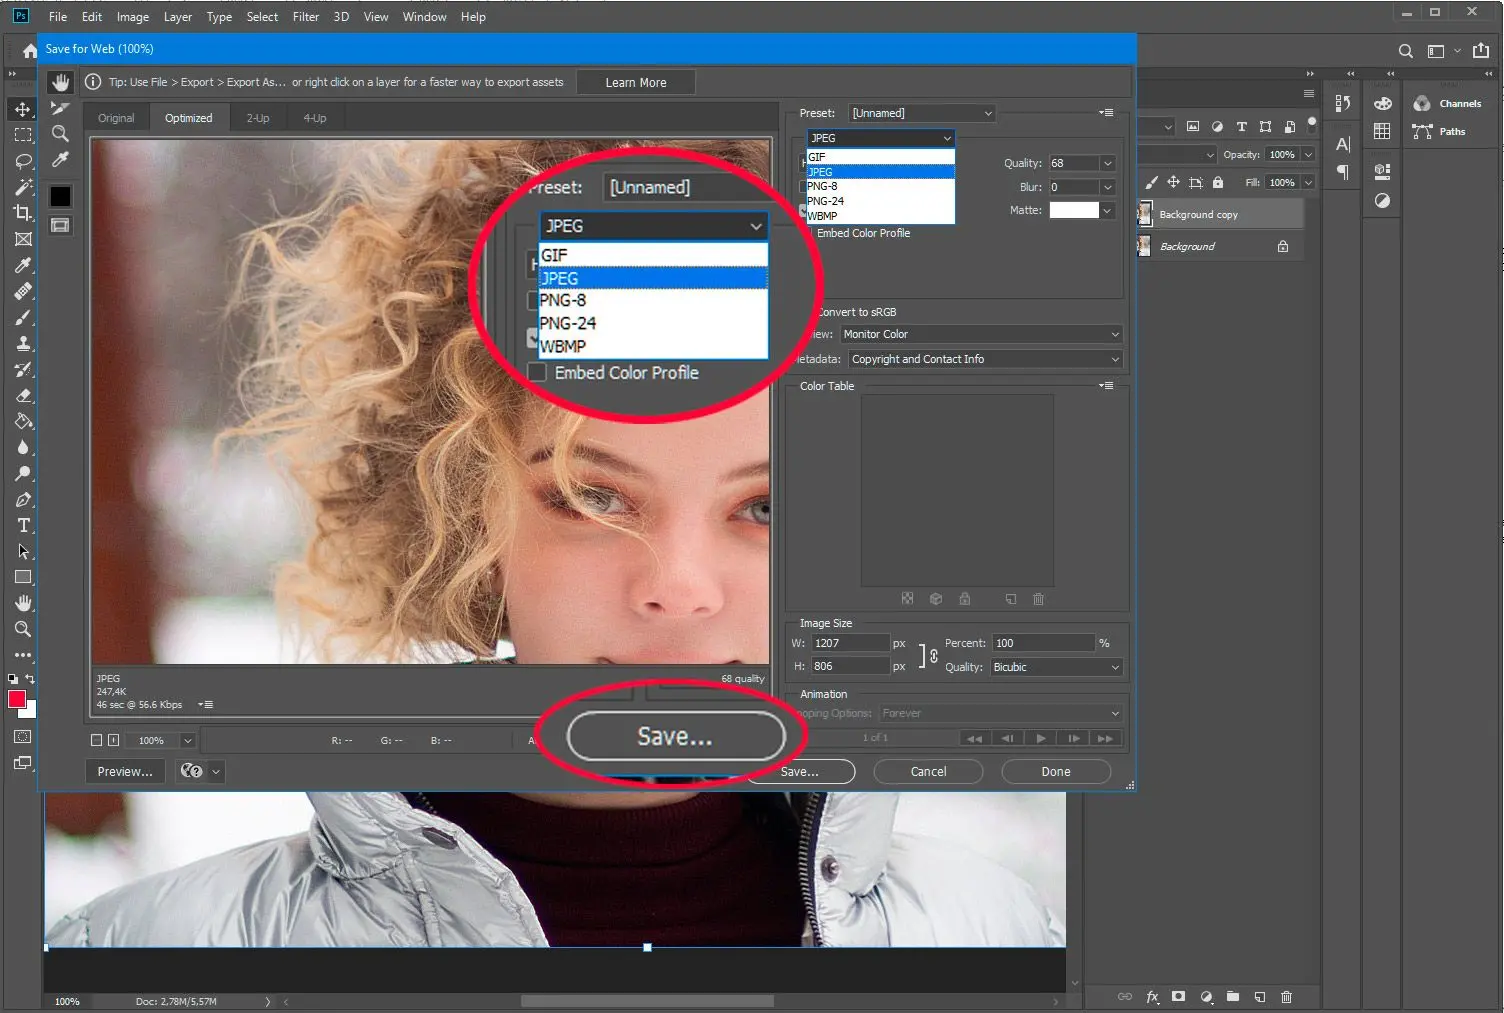 Adobe Photoshop. tallenna PSD verkkoon jpg-muodossa...